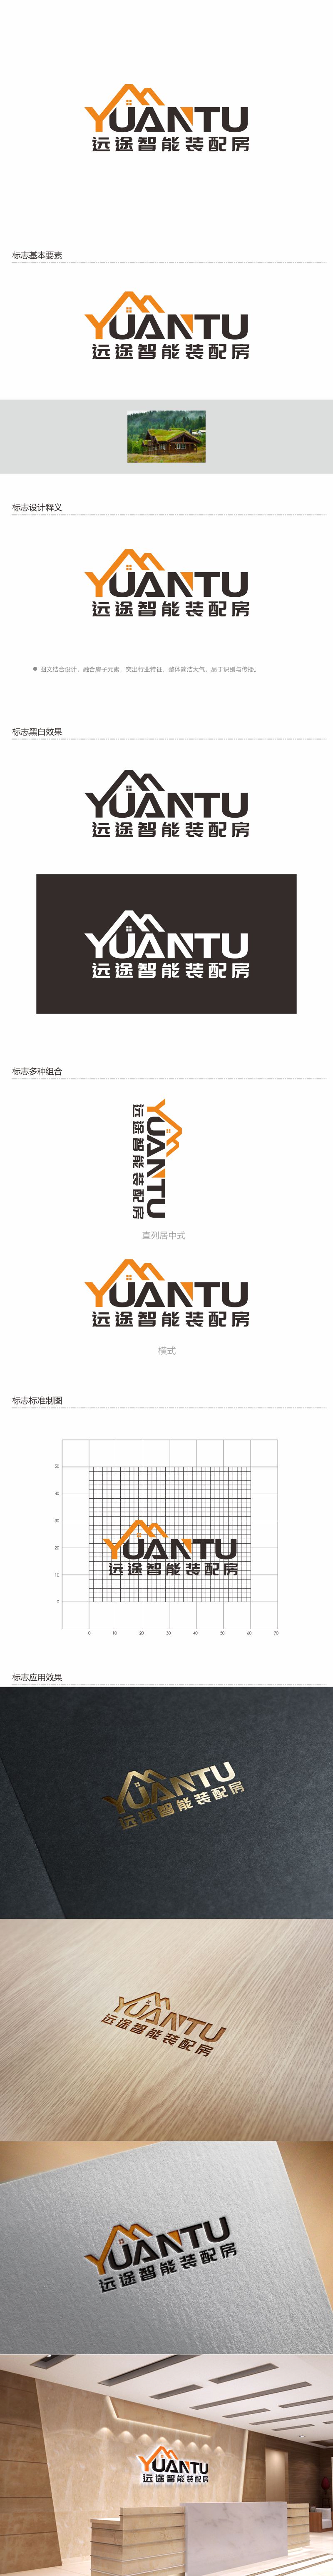 何嘉健的江苏远途智能装配房有限公司logo设计